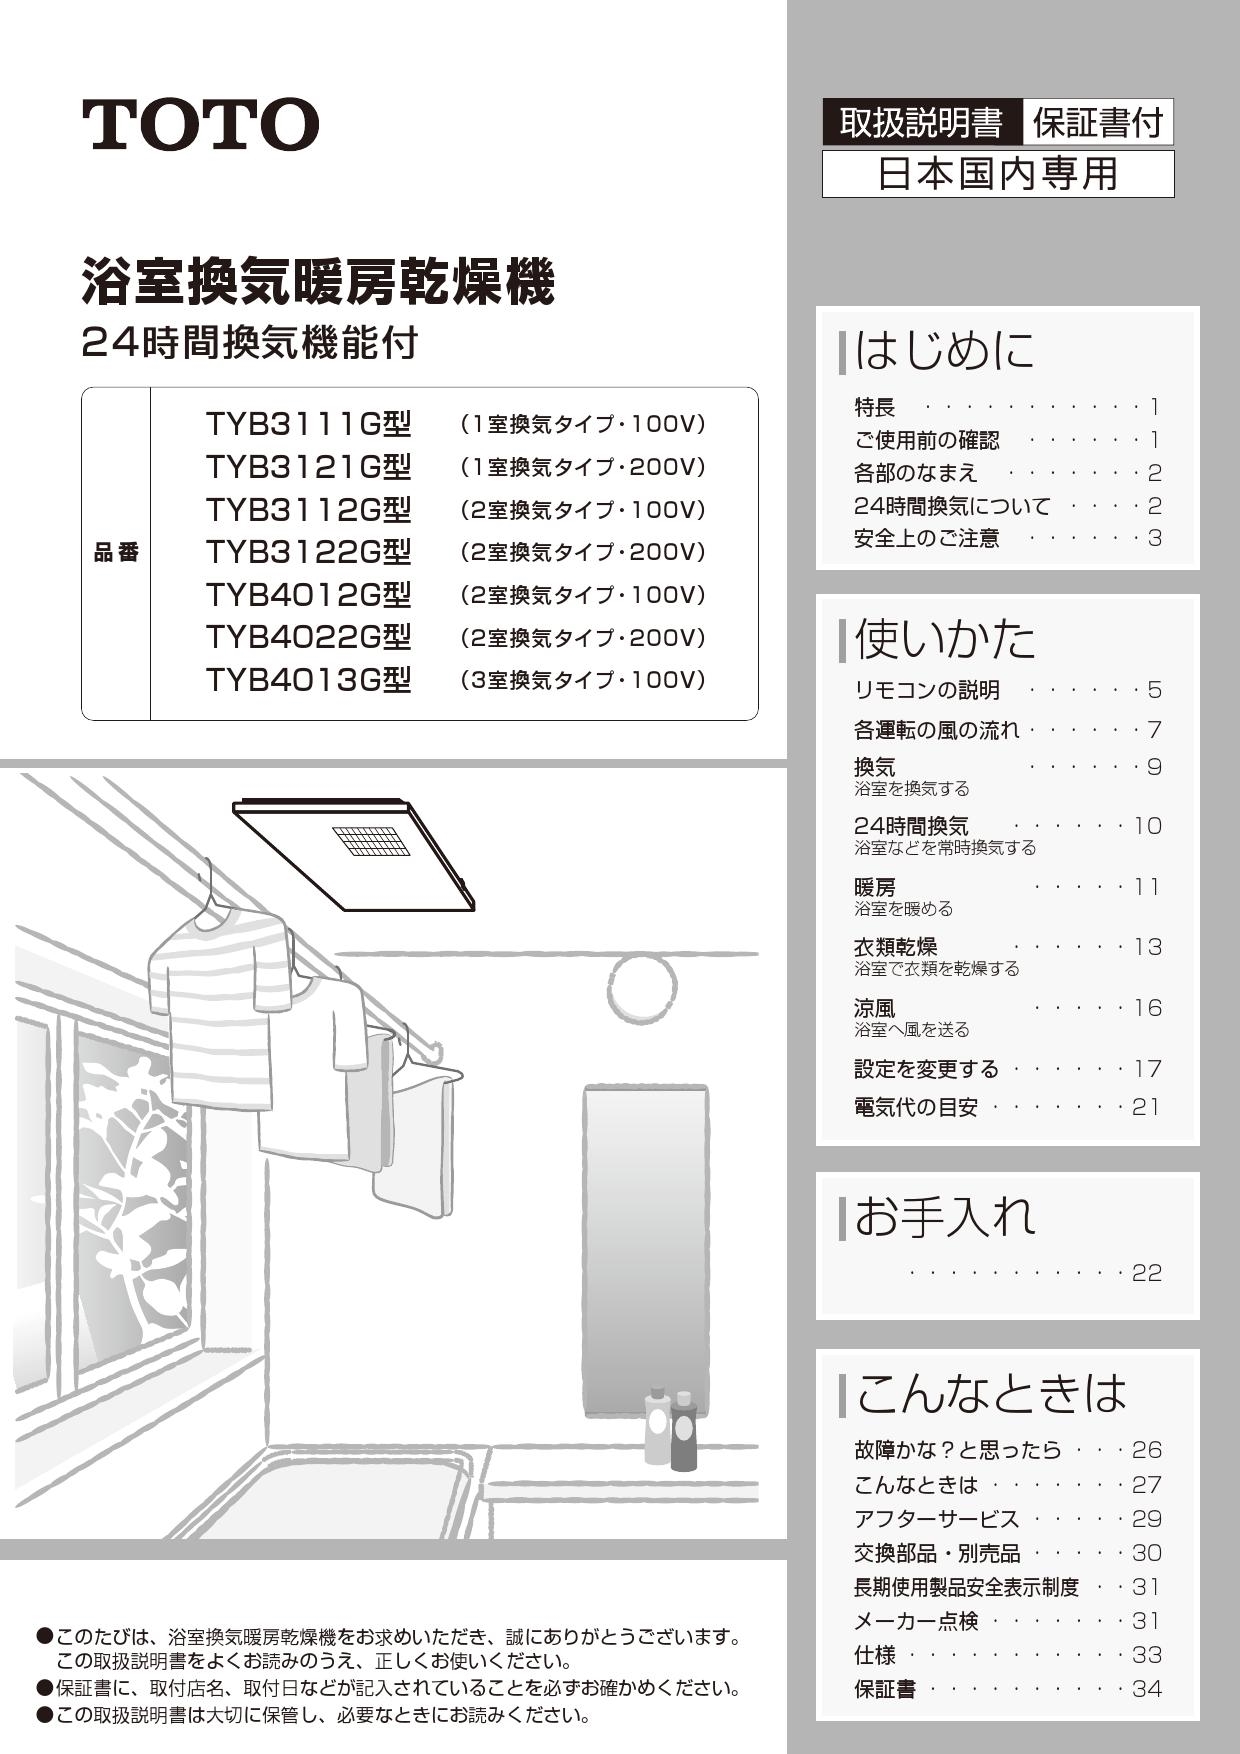 蔵 TYB4012GAN 三乾王 TYB4000シリーズ TOTO 浴室換気乾燥暖房器